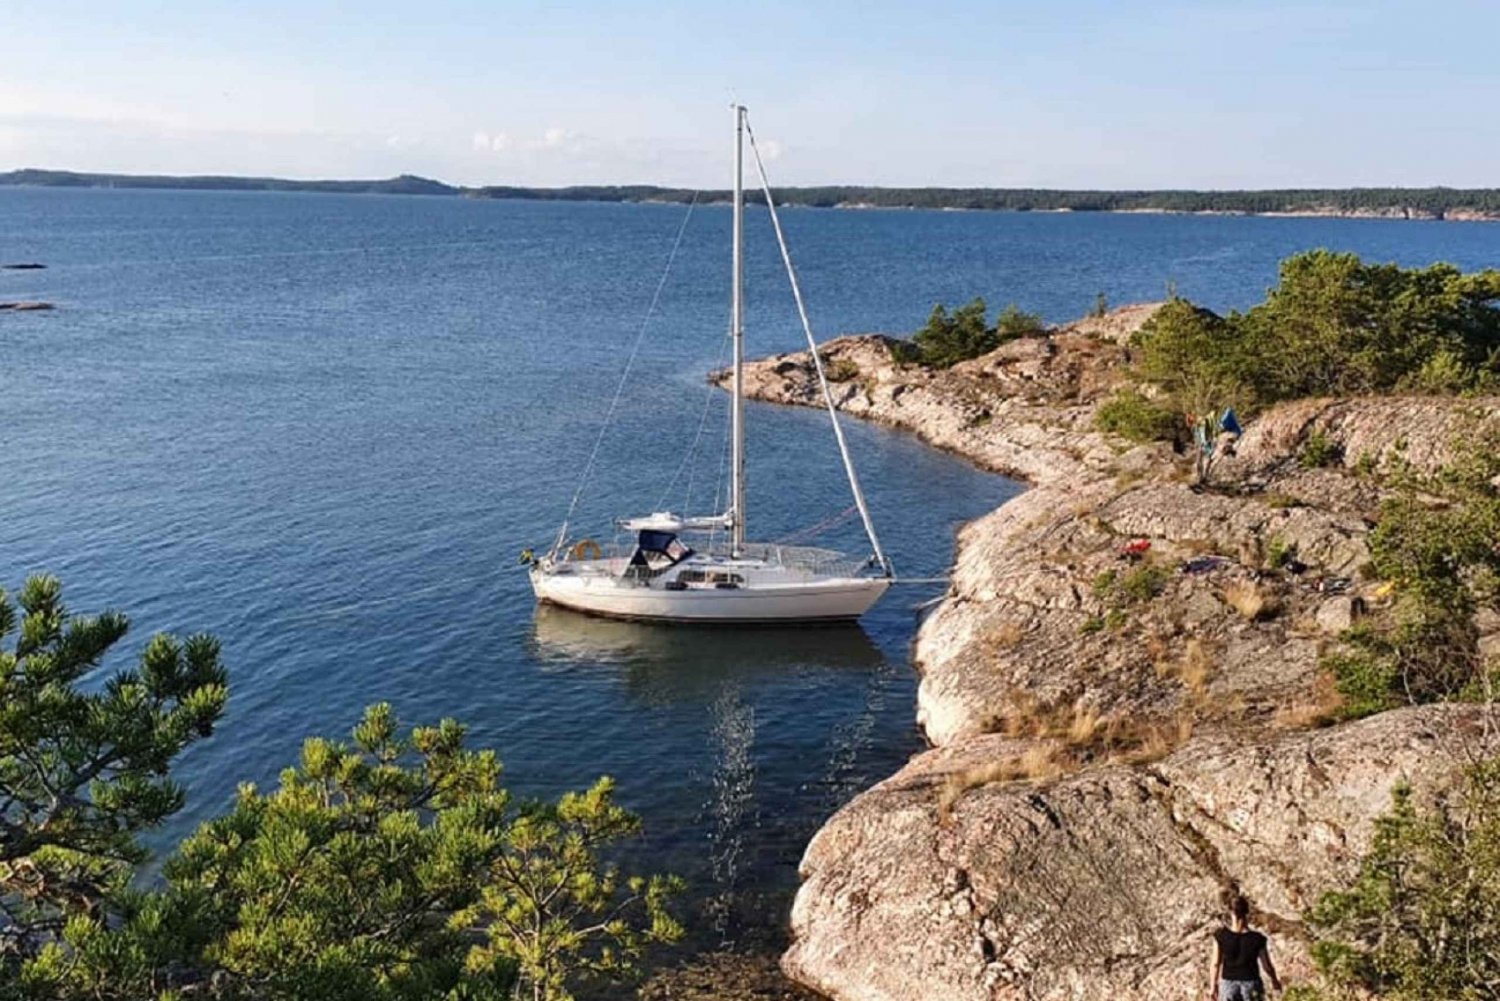 Estocolmo: passeio de barco de dia inteiro pelo arquipélago com almoço